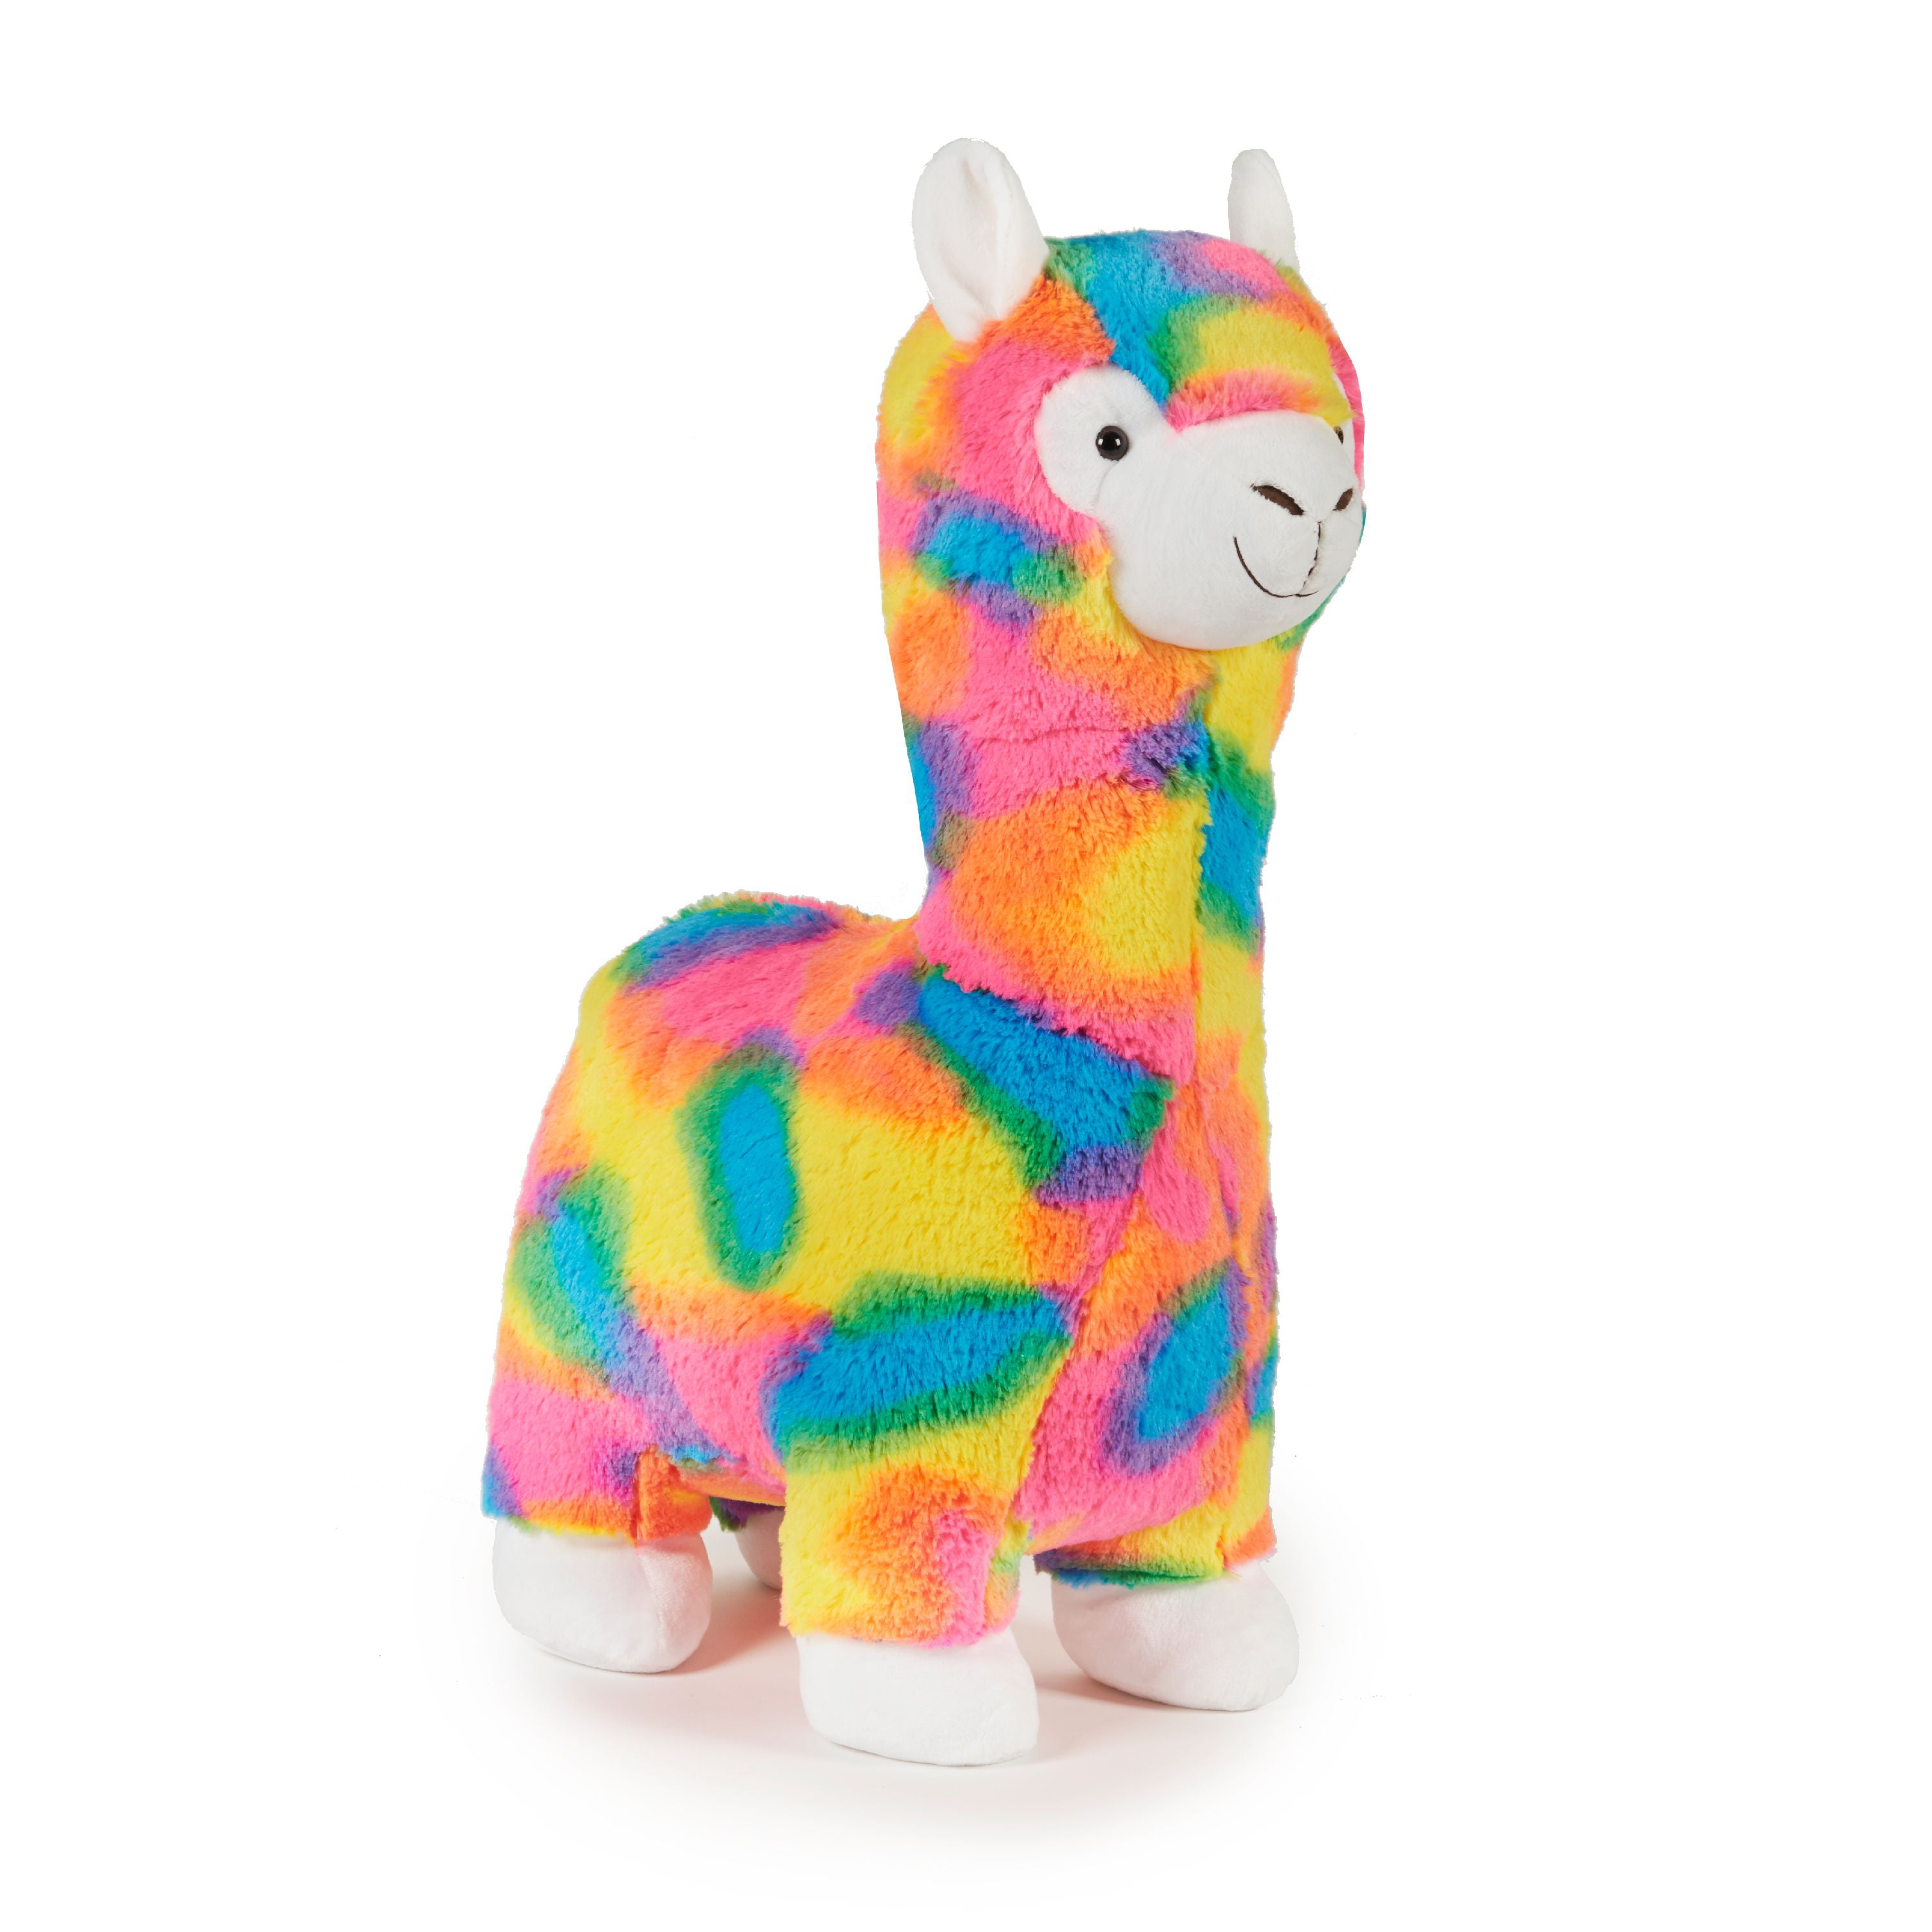 Way To Celebrate Llama 12” Pink Plush Stuffed Animal Rainbow Feet & Tail 